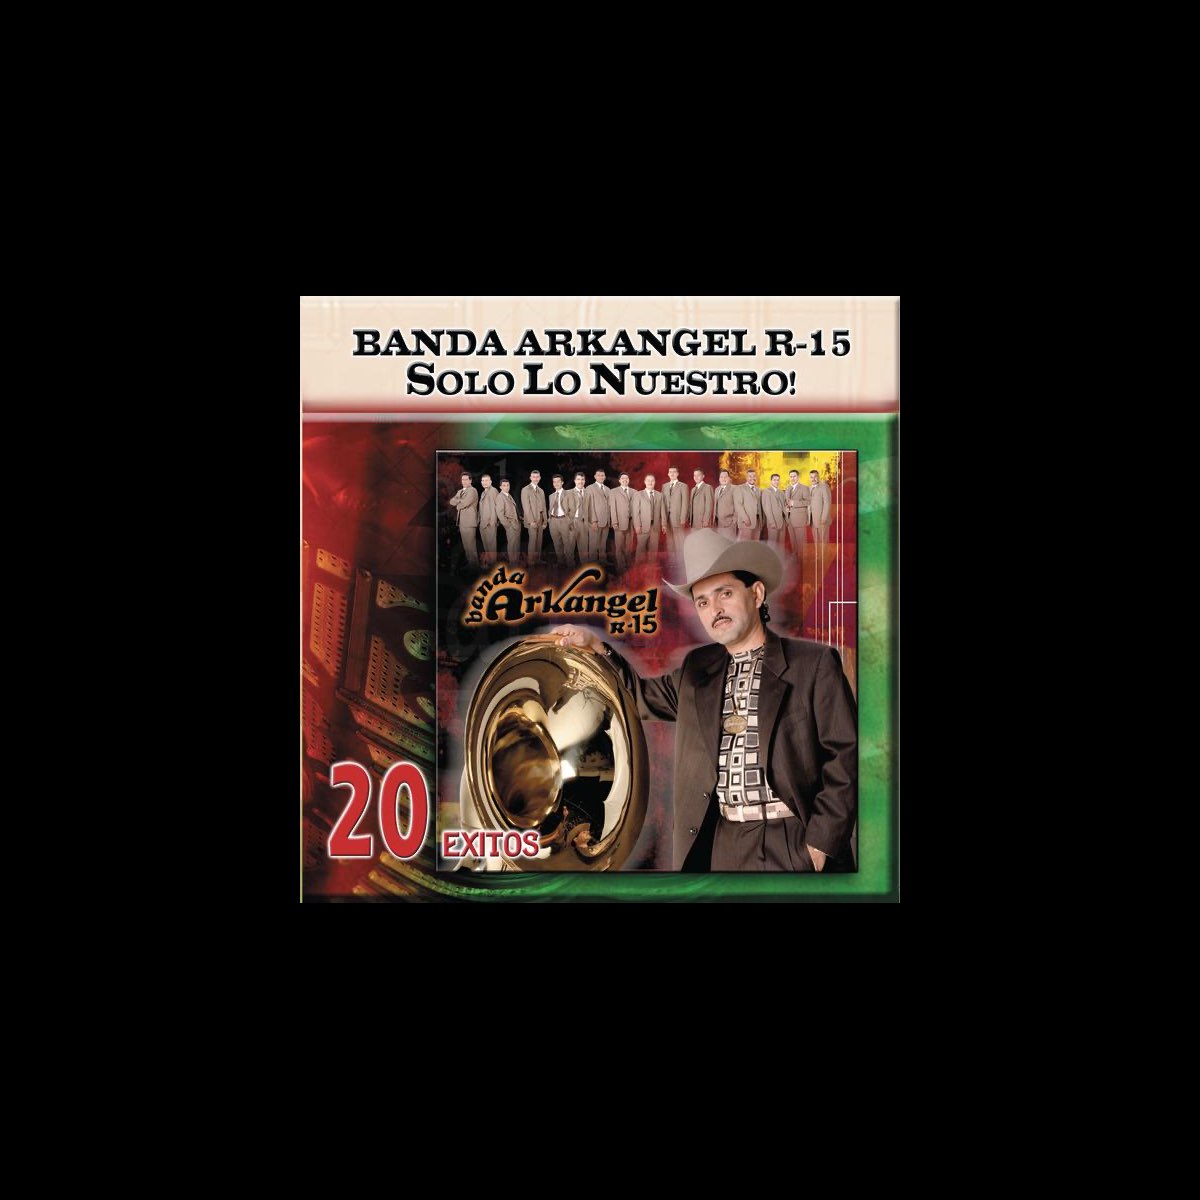 Solo Lo Nuestro 20 Éxitos” álbum De Banda Arkangel R 15 En Apple Music 4241